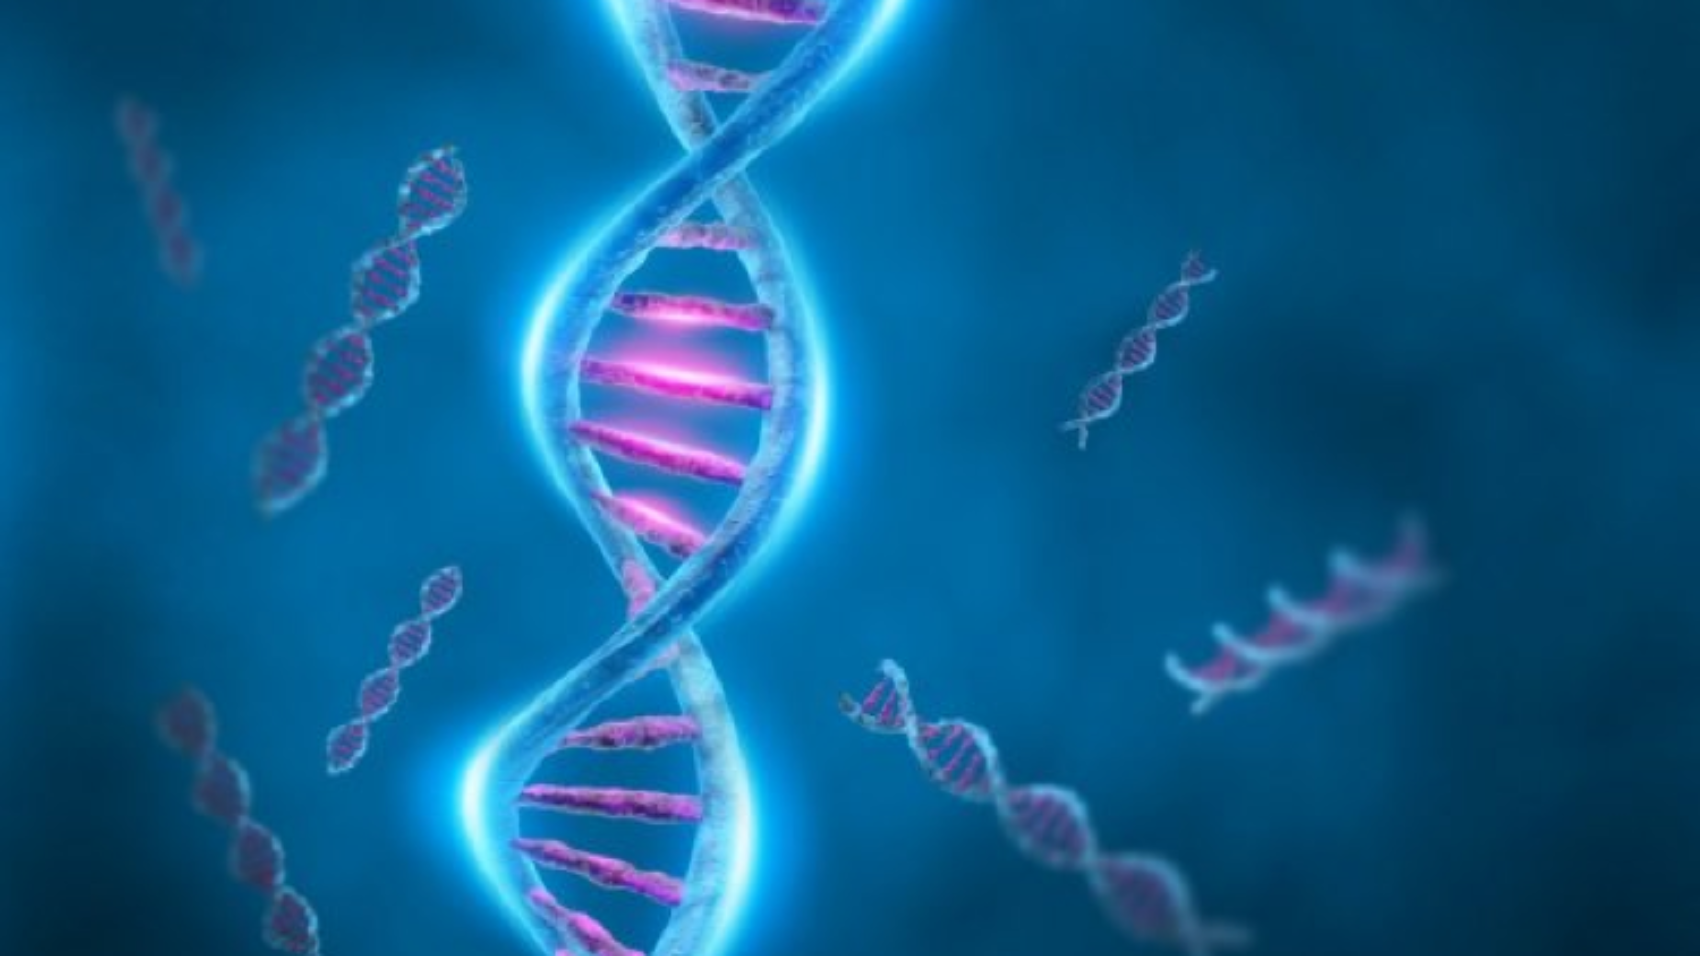 Fascinerend DNA - kraak de code